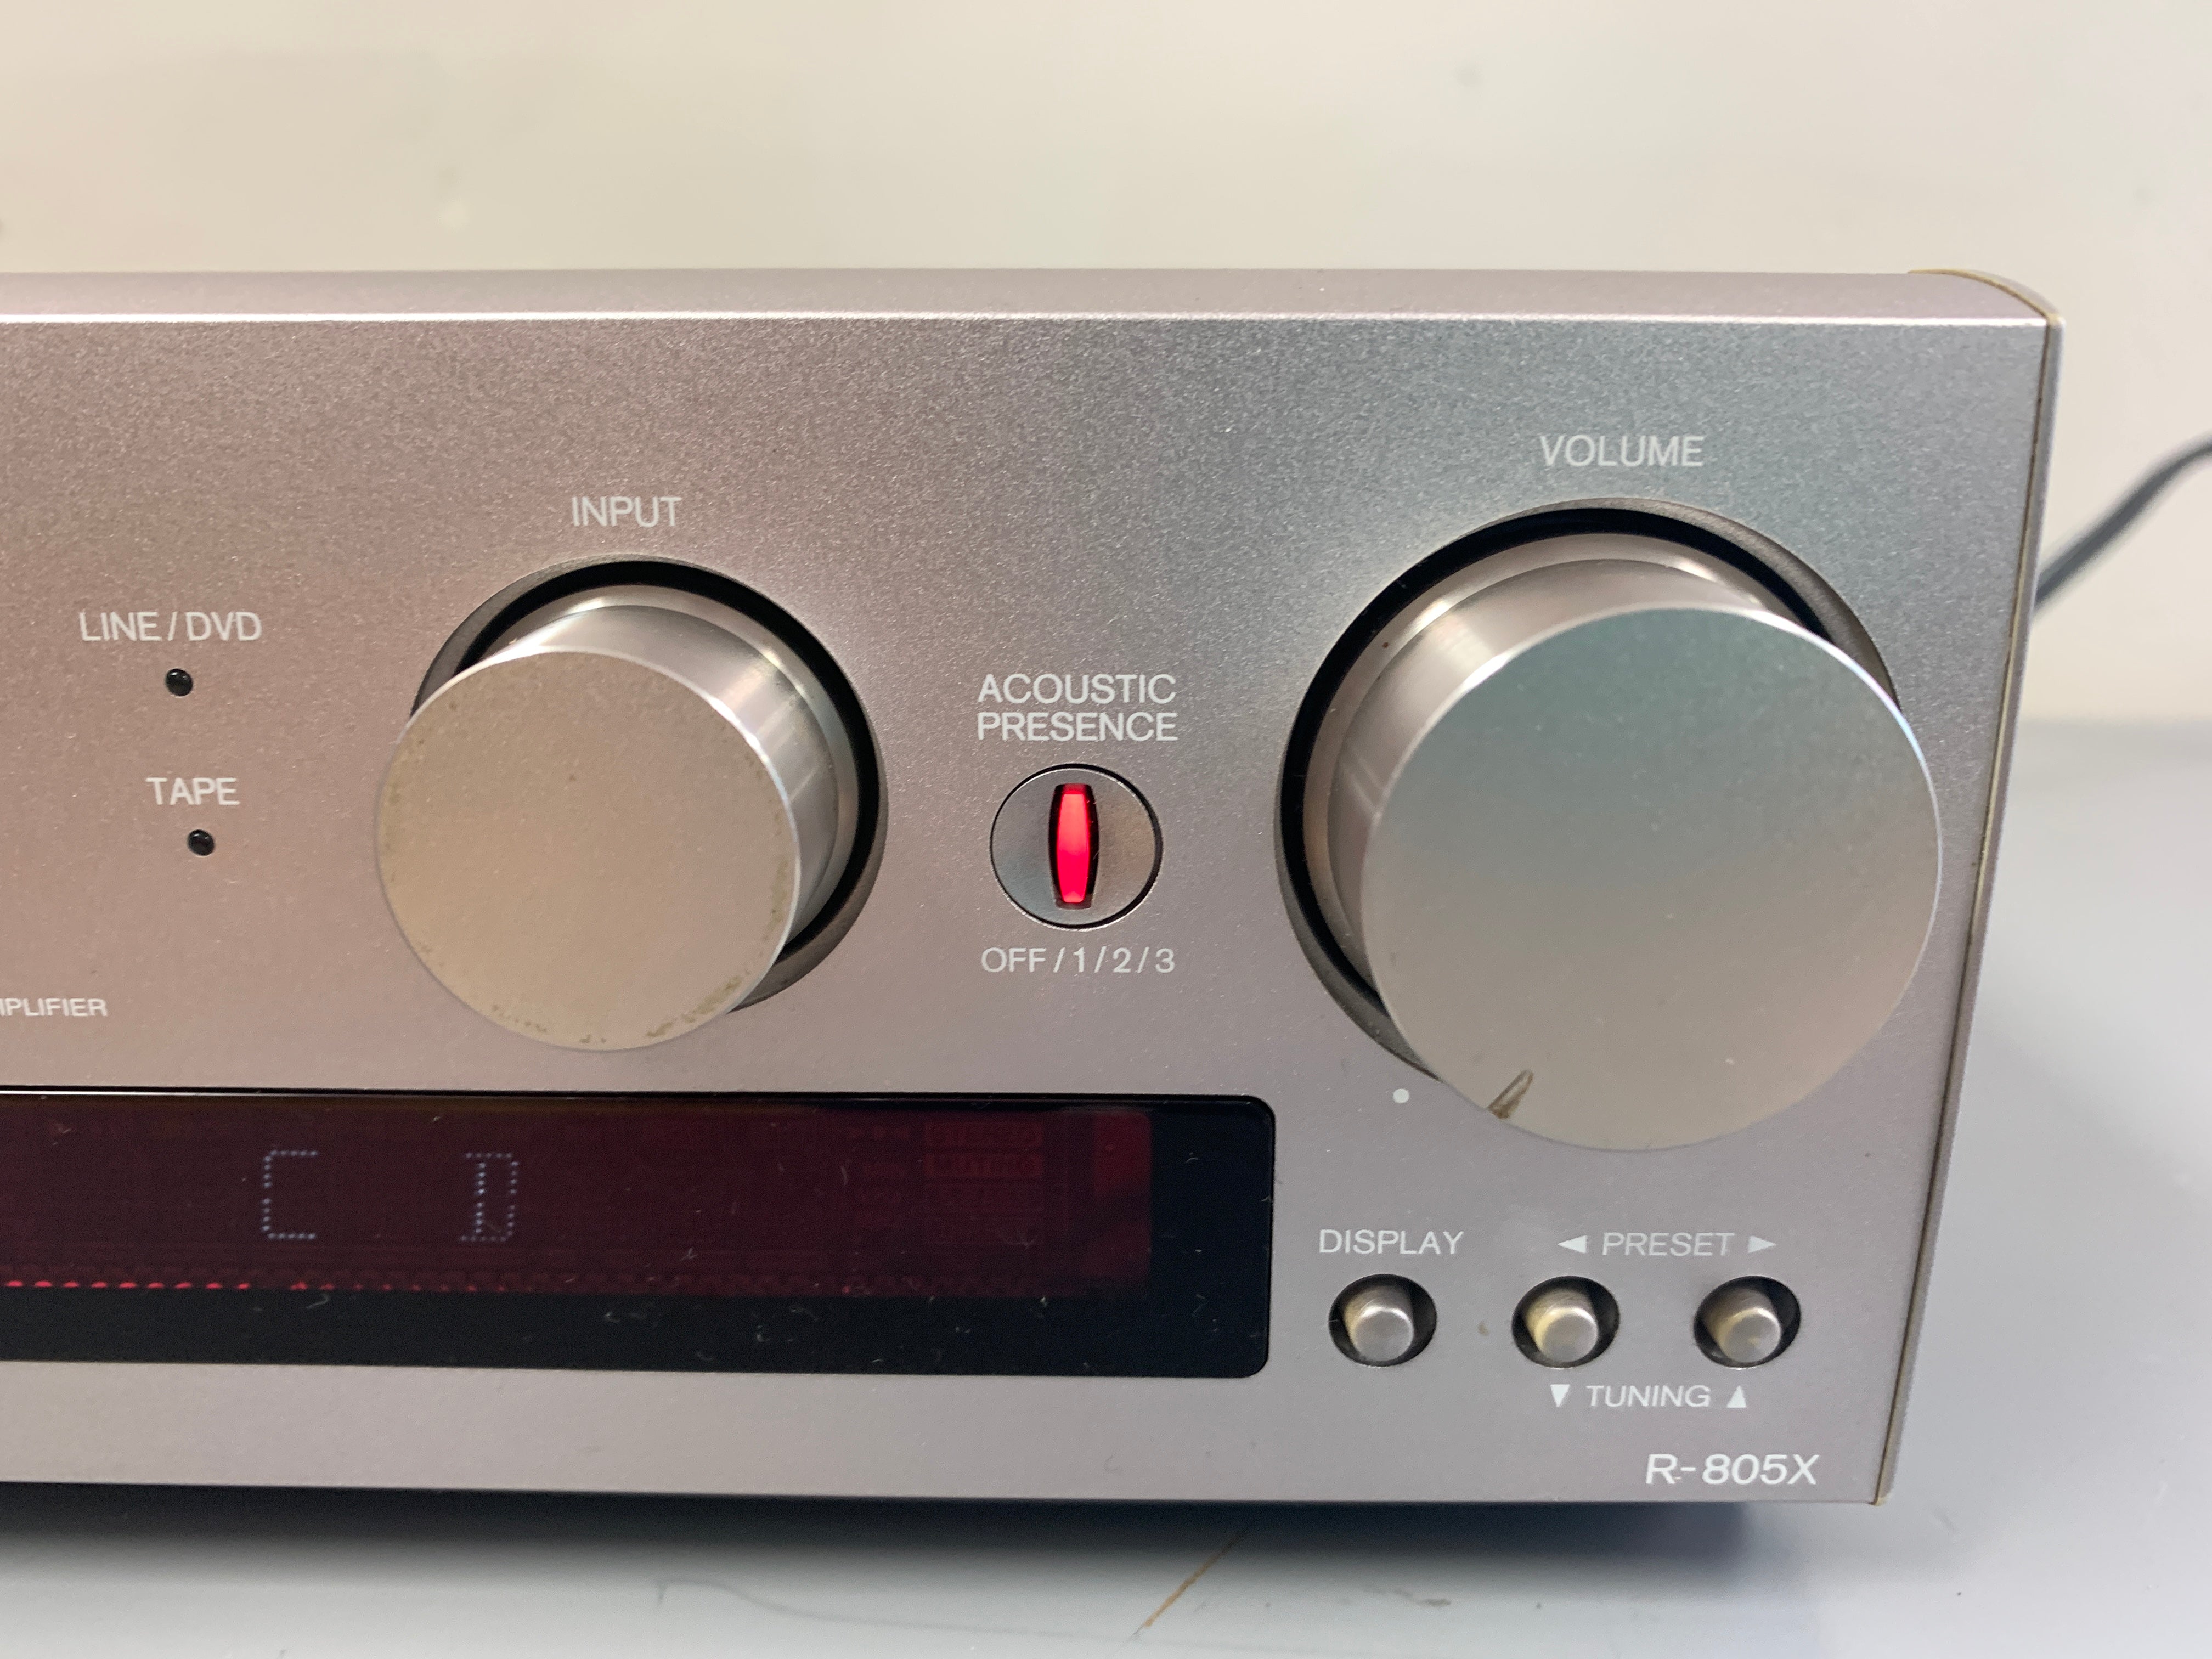 Onkyo R-805x MIDI Size Stereo Receiver